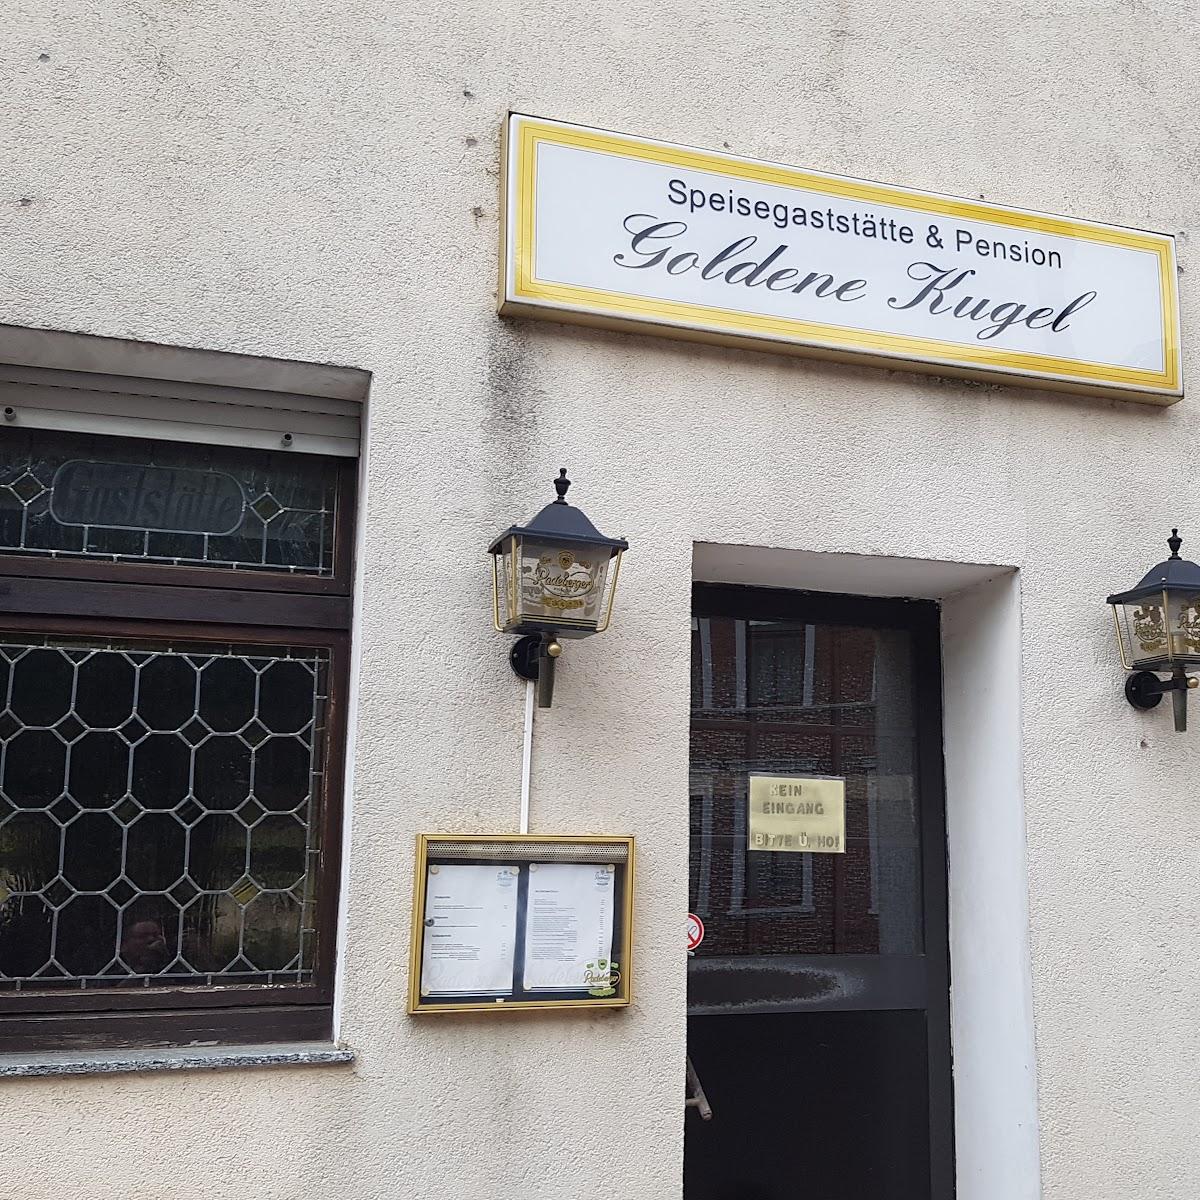 Restaurant "Gasthof Goldene Kugel" in Barleben